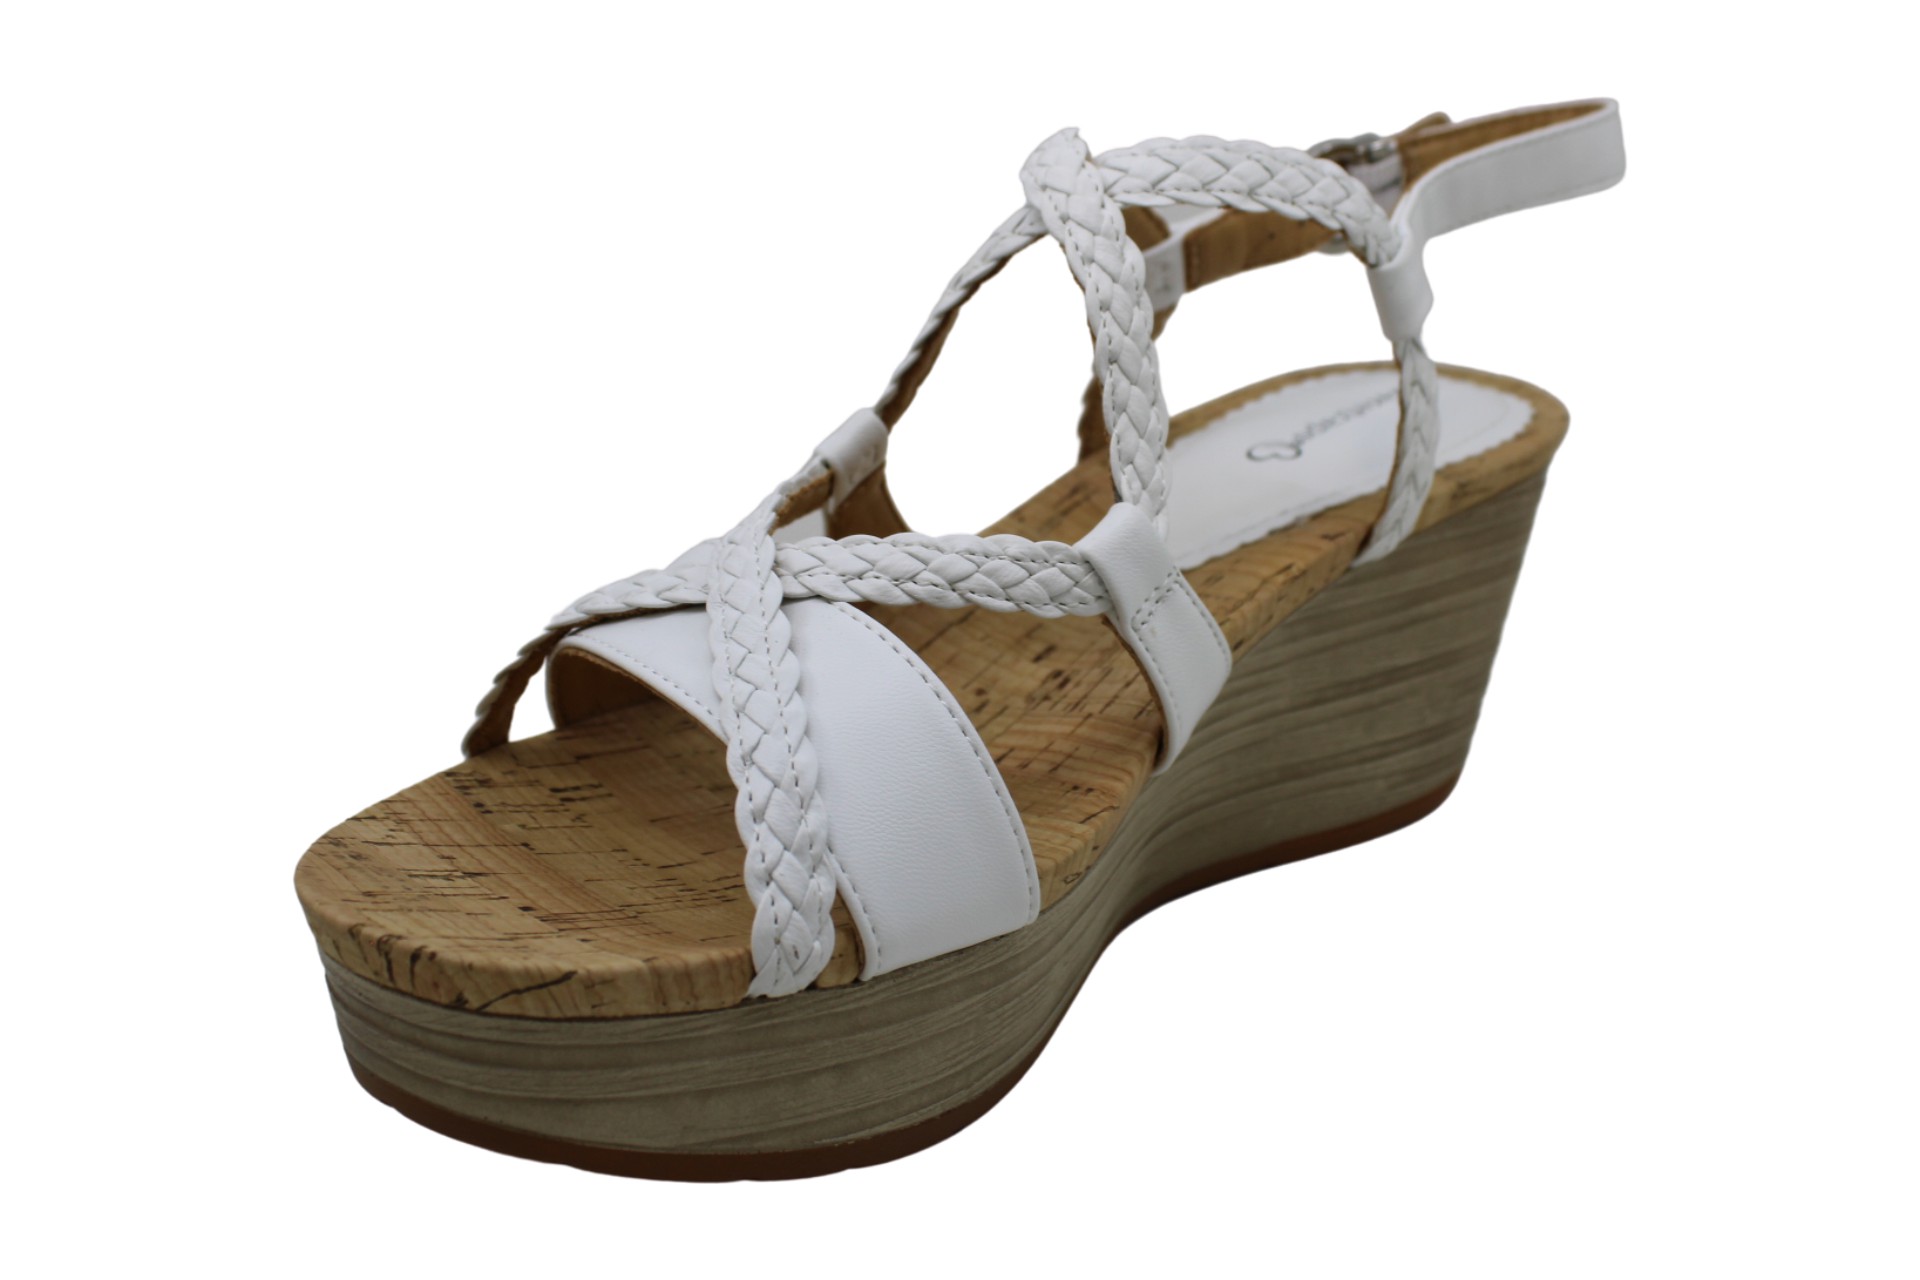 Bare Traps Womens Platform Sandals in Black Color, Size 10 VWQ | eBay